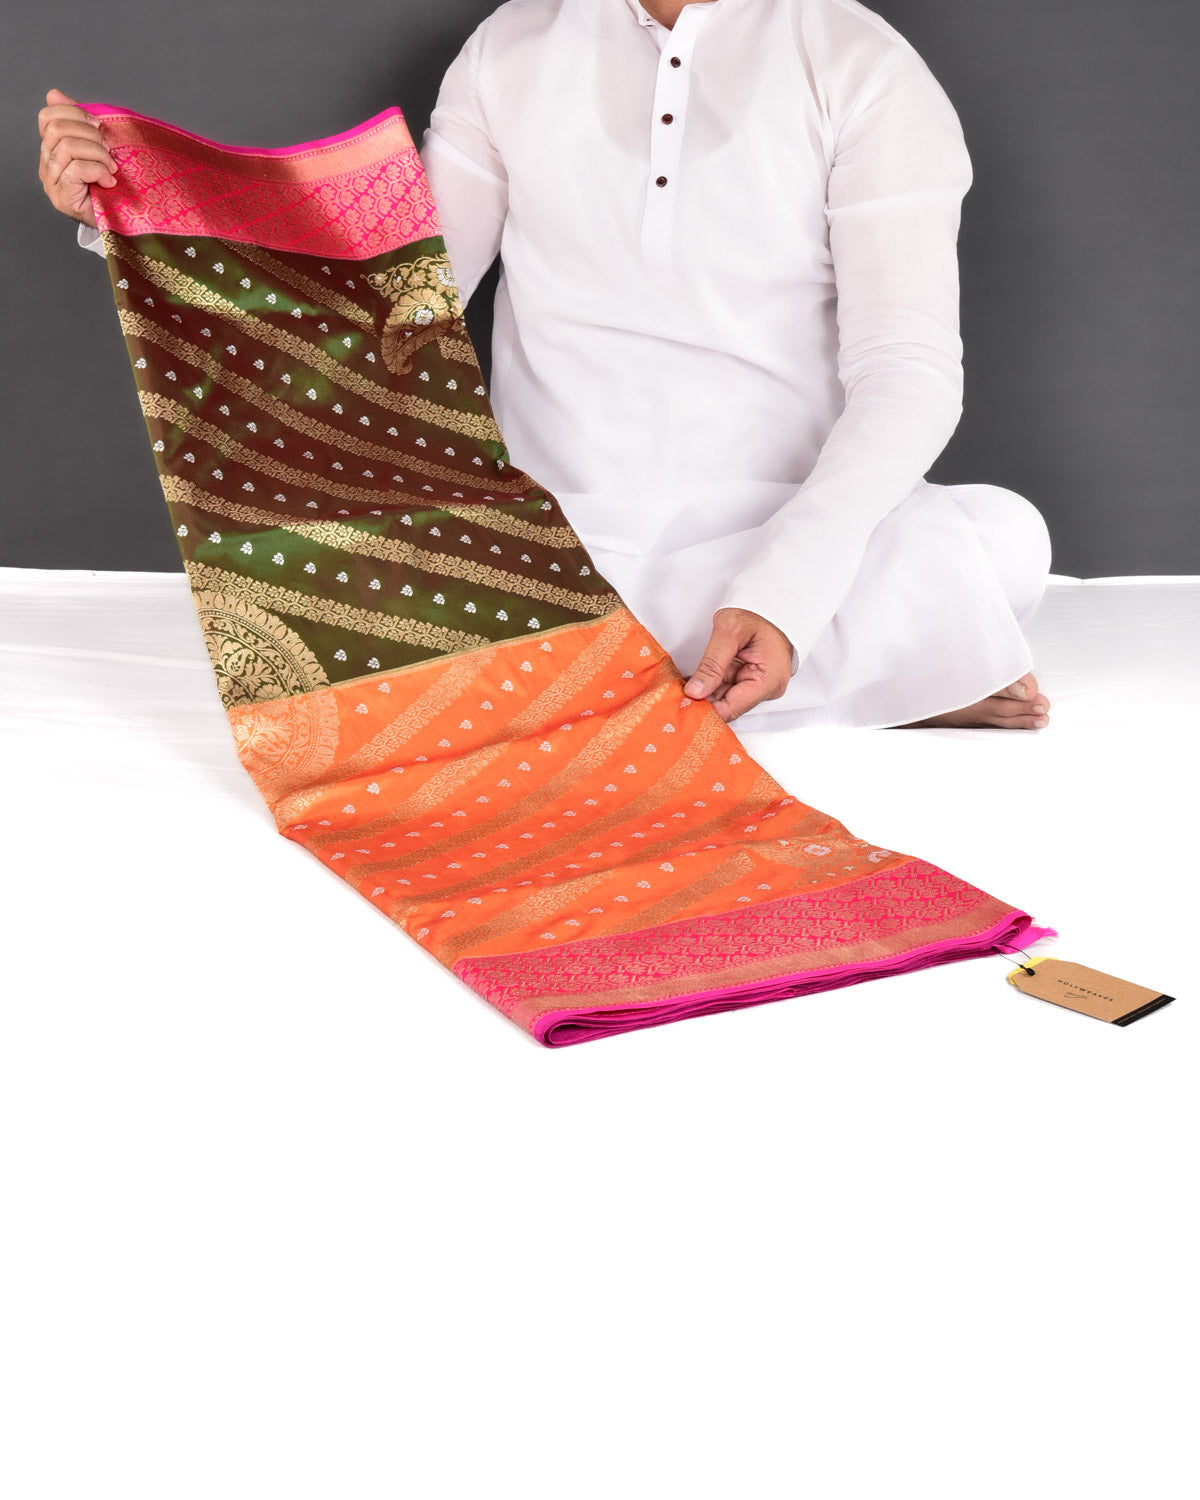 Shot Rani Pink Banarasi Rangkaat Pallu Kadhuan Brocade Handwoven Katan Silk Saree - By HolyWeaves, Benares